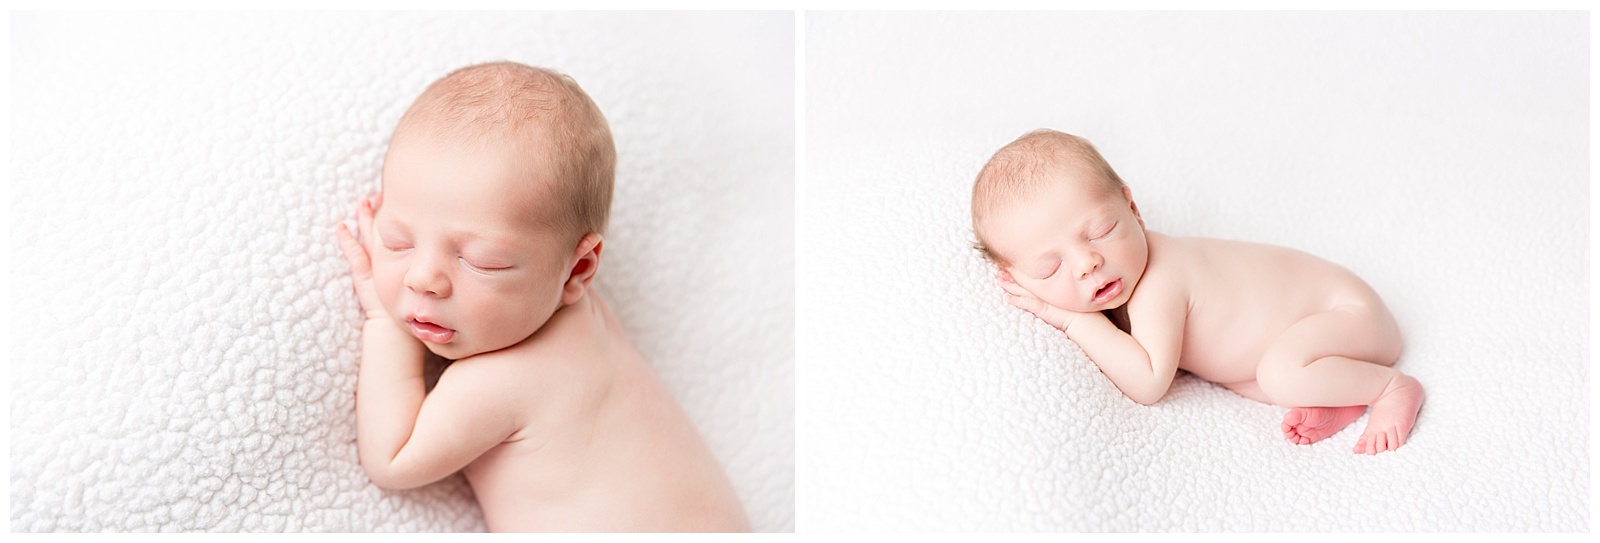 Pacific Grove Newborn Baby Photographer_0783.jpg